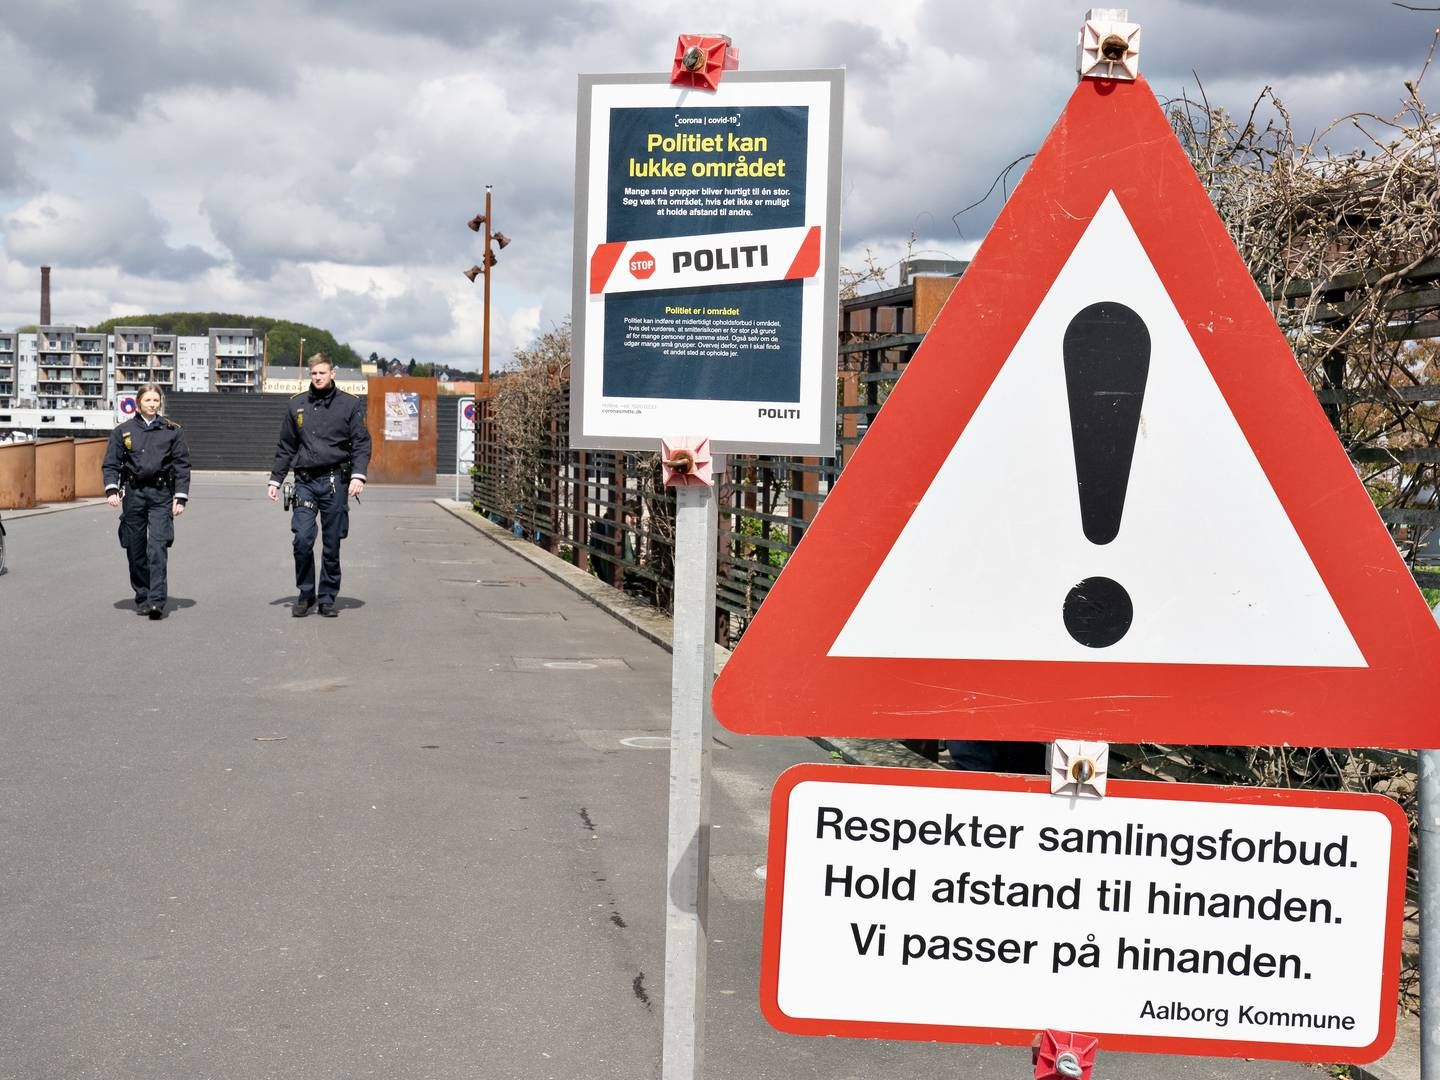 Risikoen for smittespredning gør, at danskerne bl.a. skal spritte af og holde afstand til hinanden. De samme regler gælder på landets byggepladser. | Foto: Henning Bagger / Ritzau Scanpix